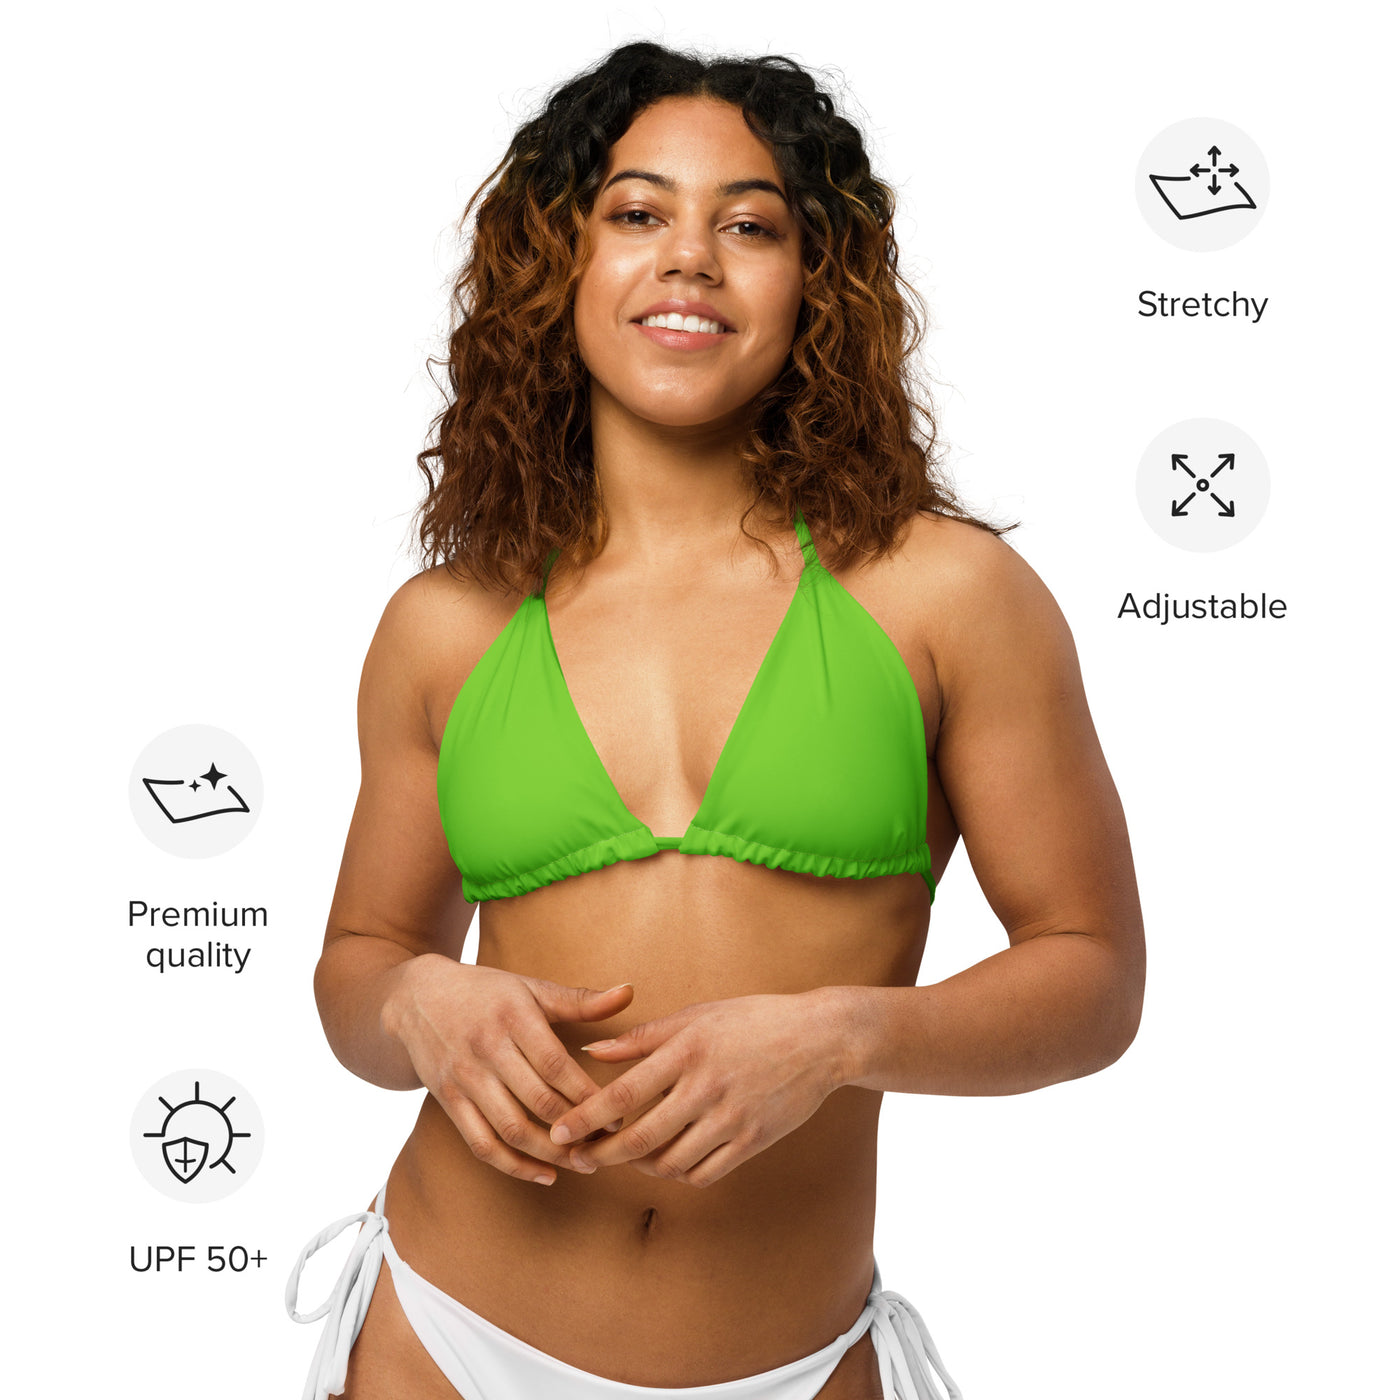 Green recycled string bikini top